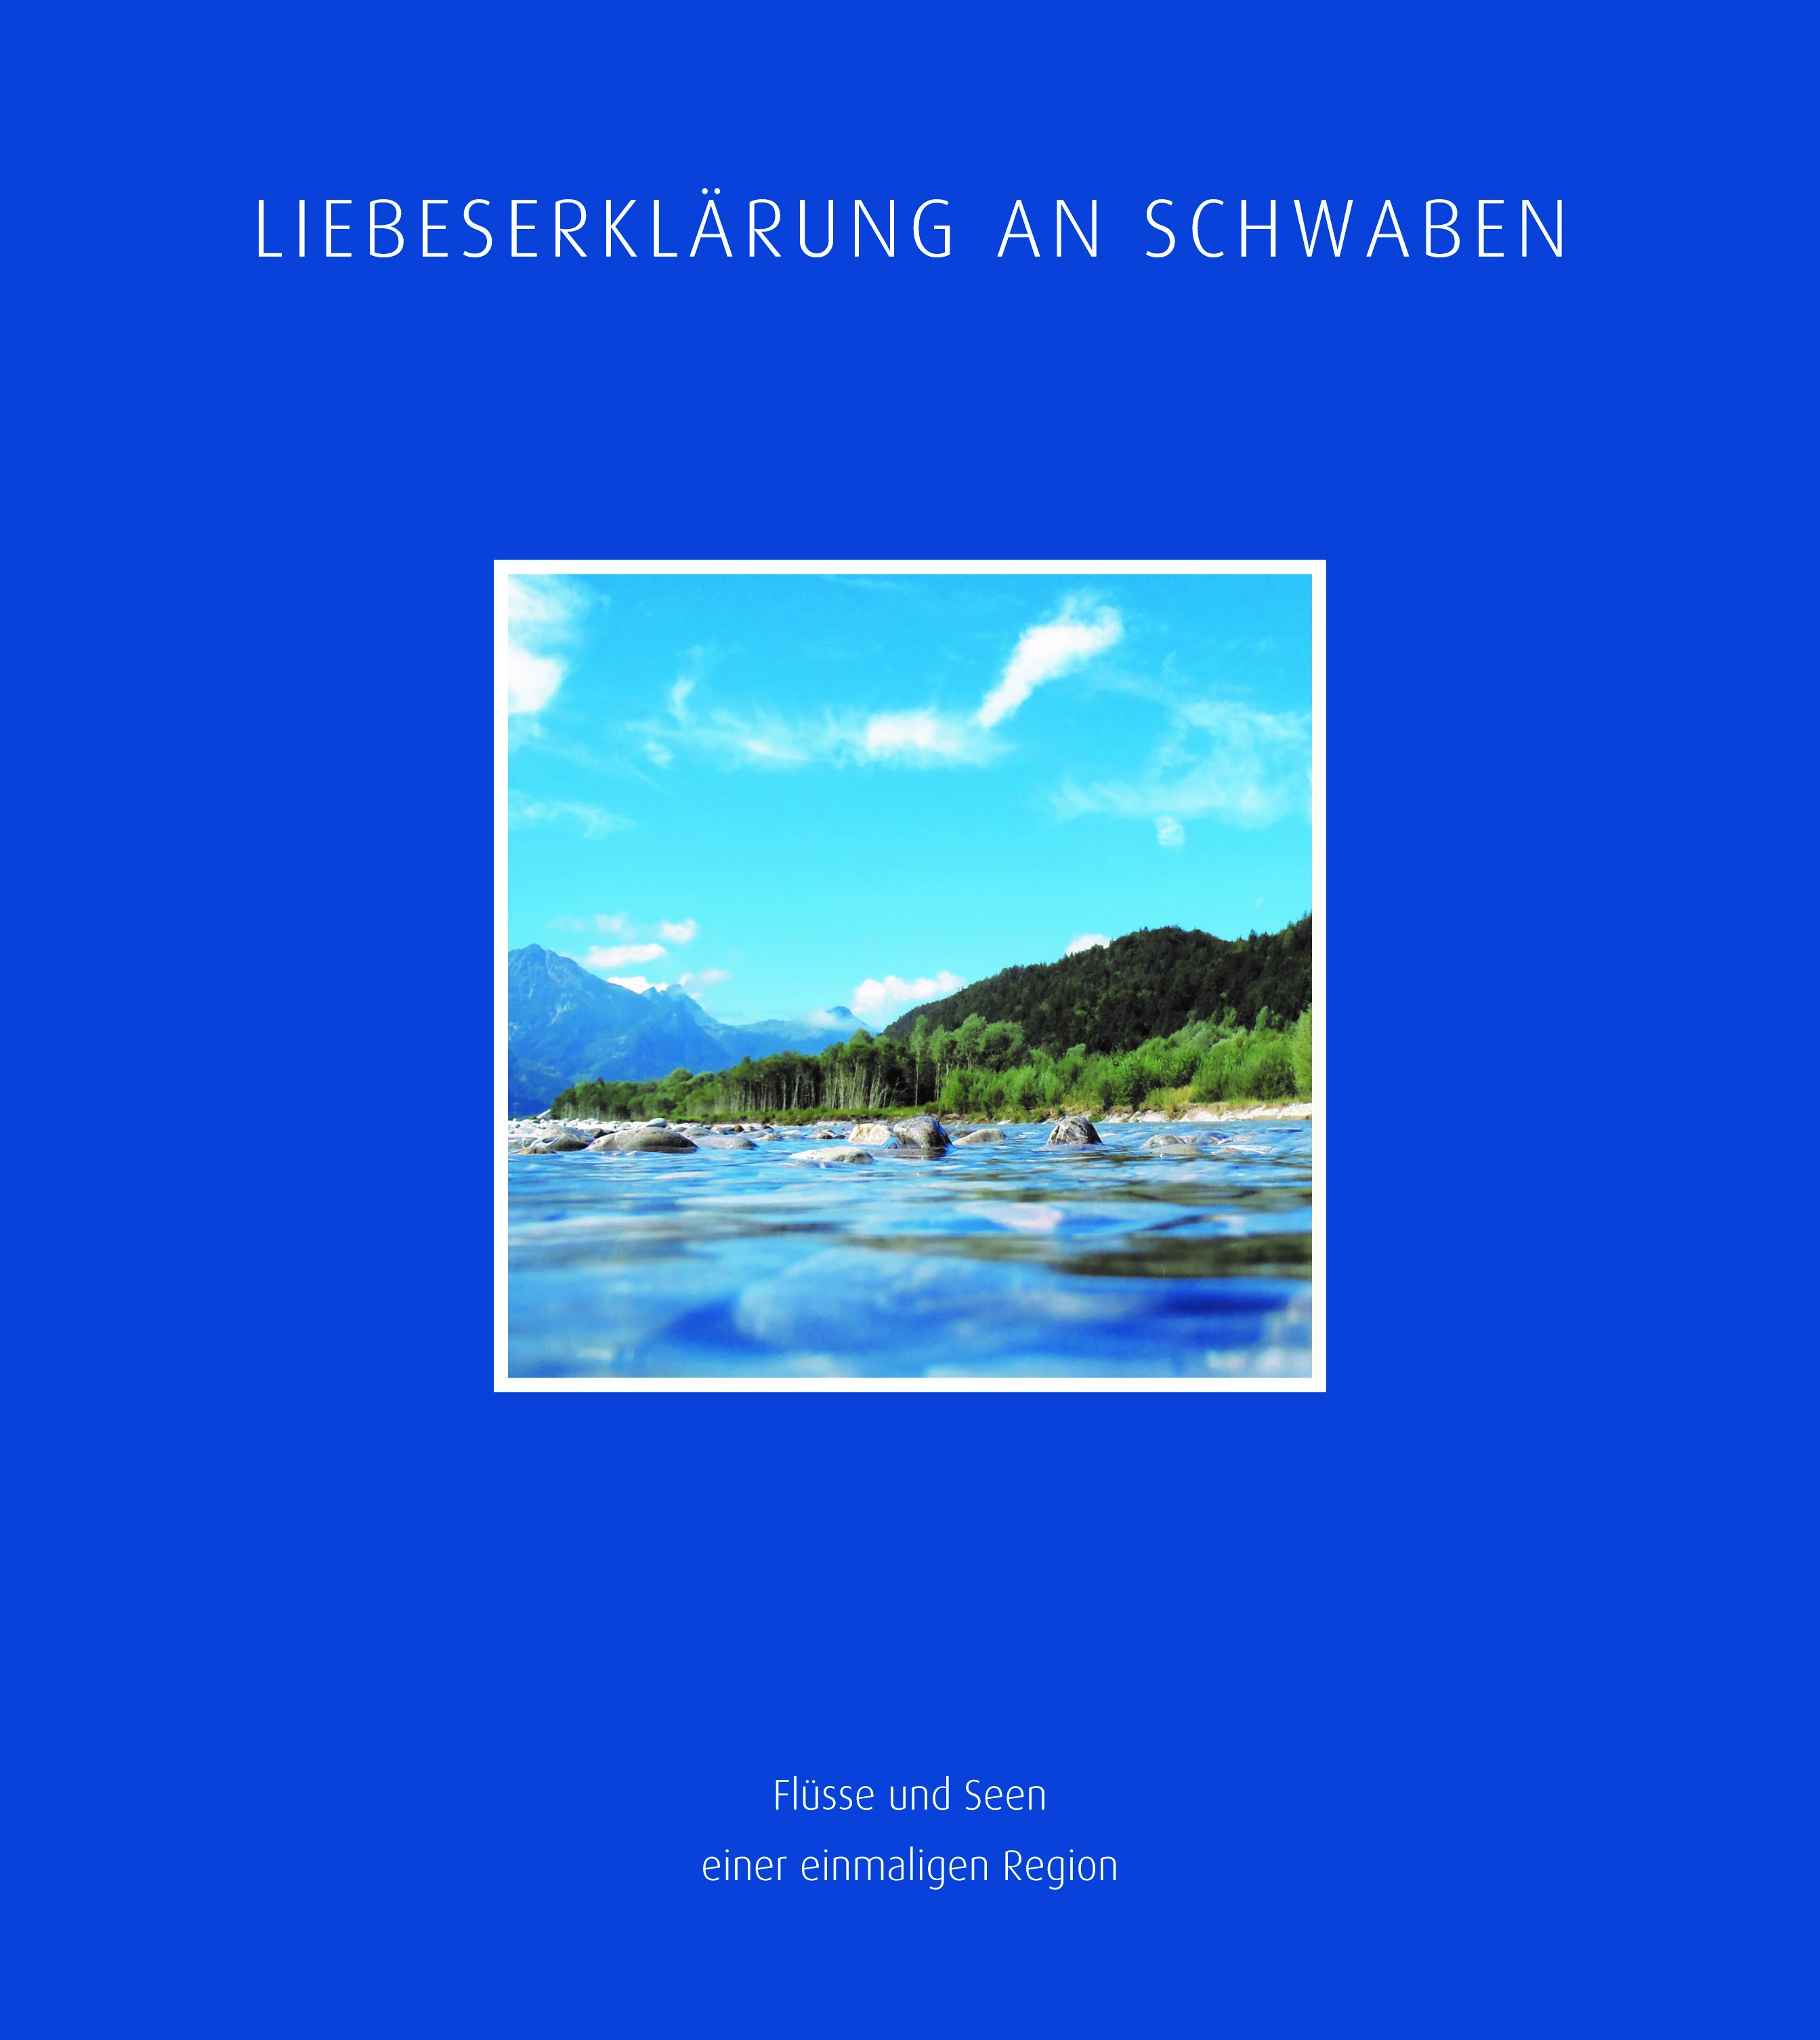 Titelbild des Bildbandes Liebeserklärung an Schwaben - Flüsse und Seen einer einmaligen Region